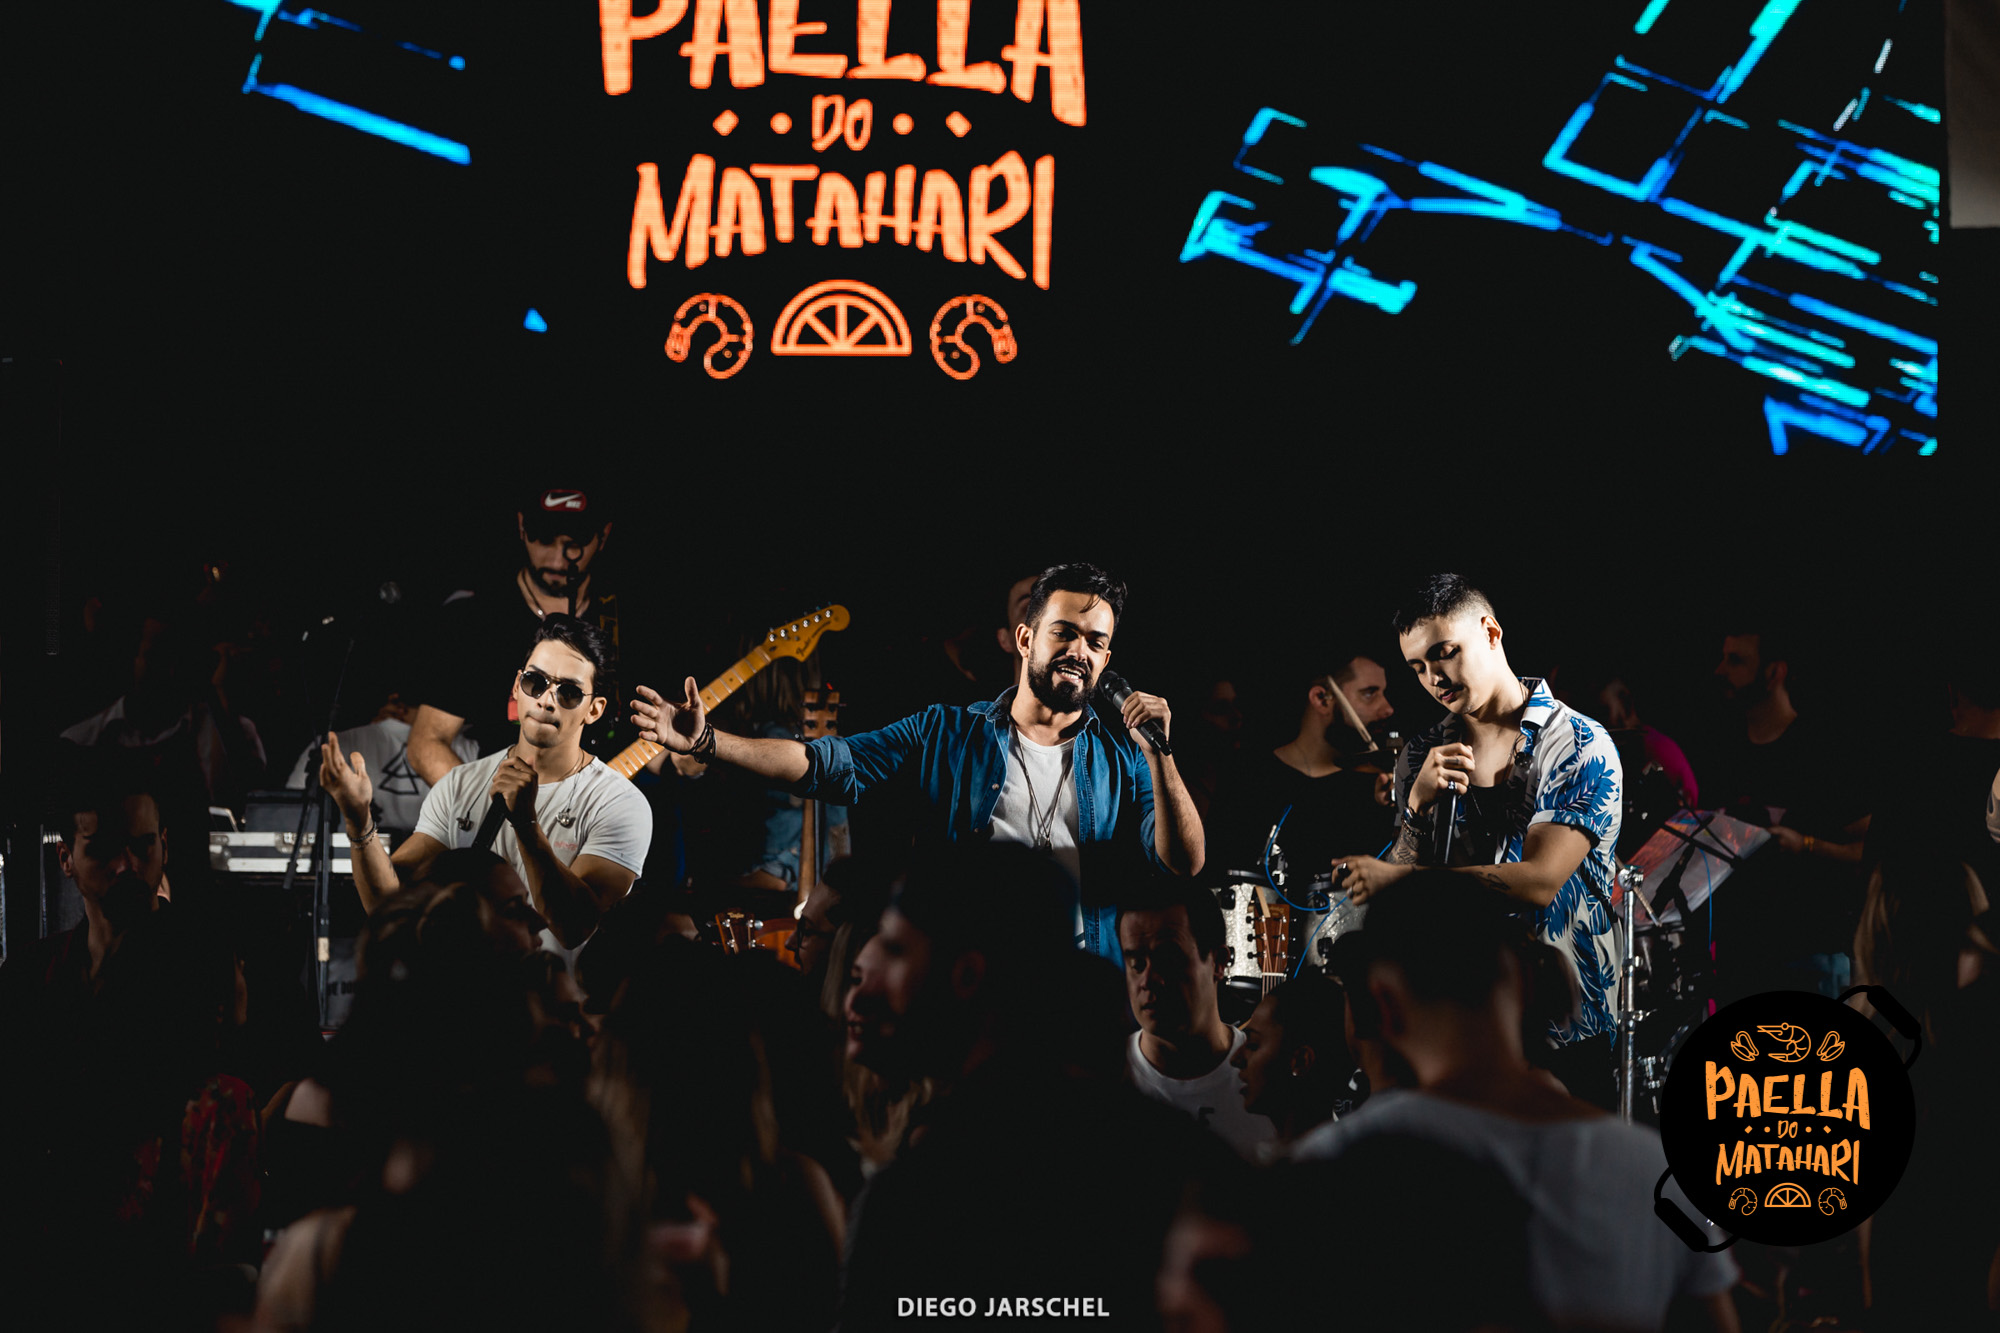 Paella Matahari 2018